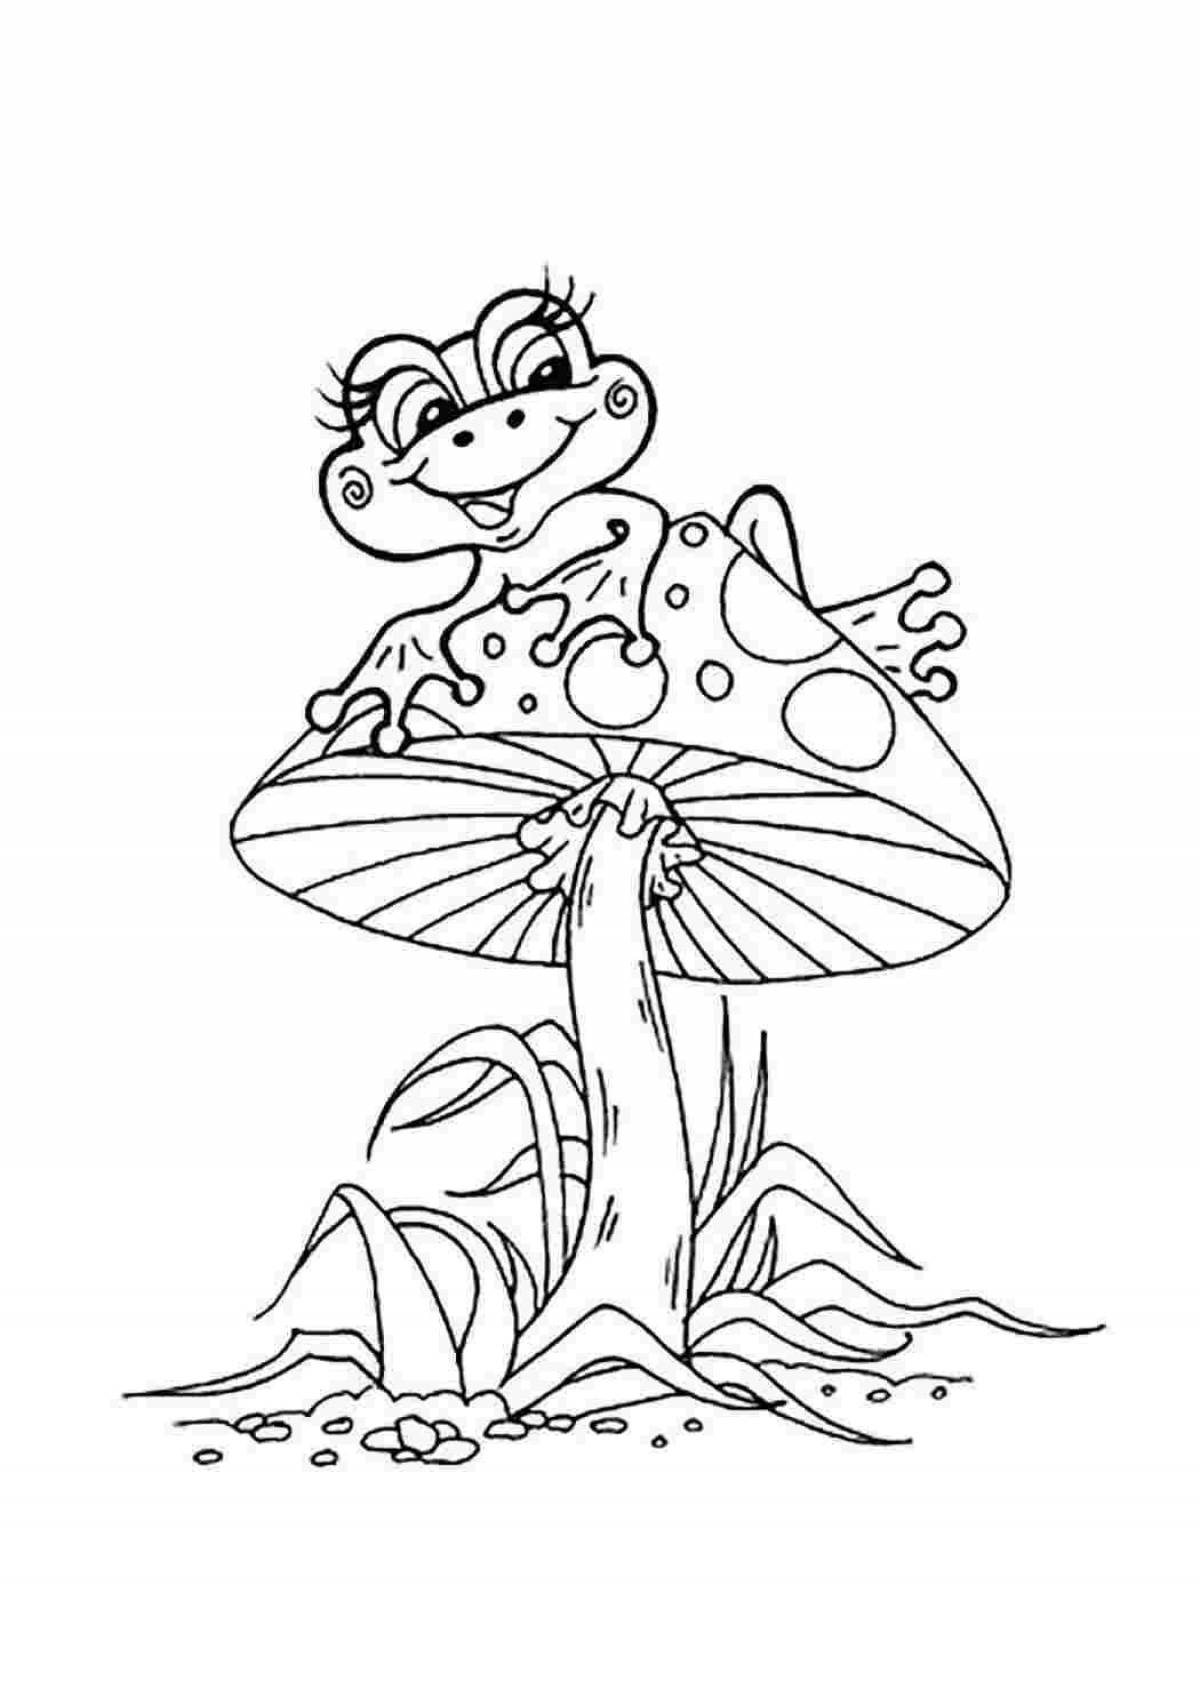 Energetic cartoon frog coloring book